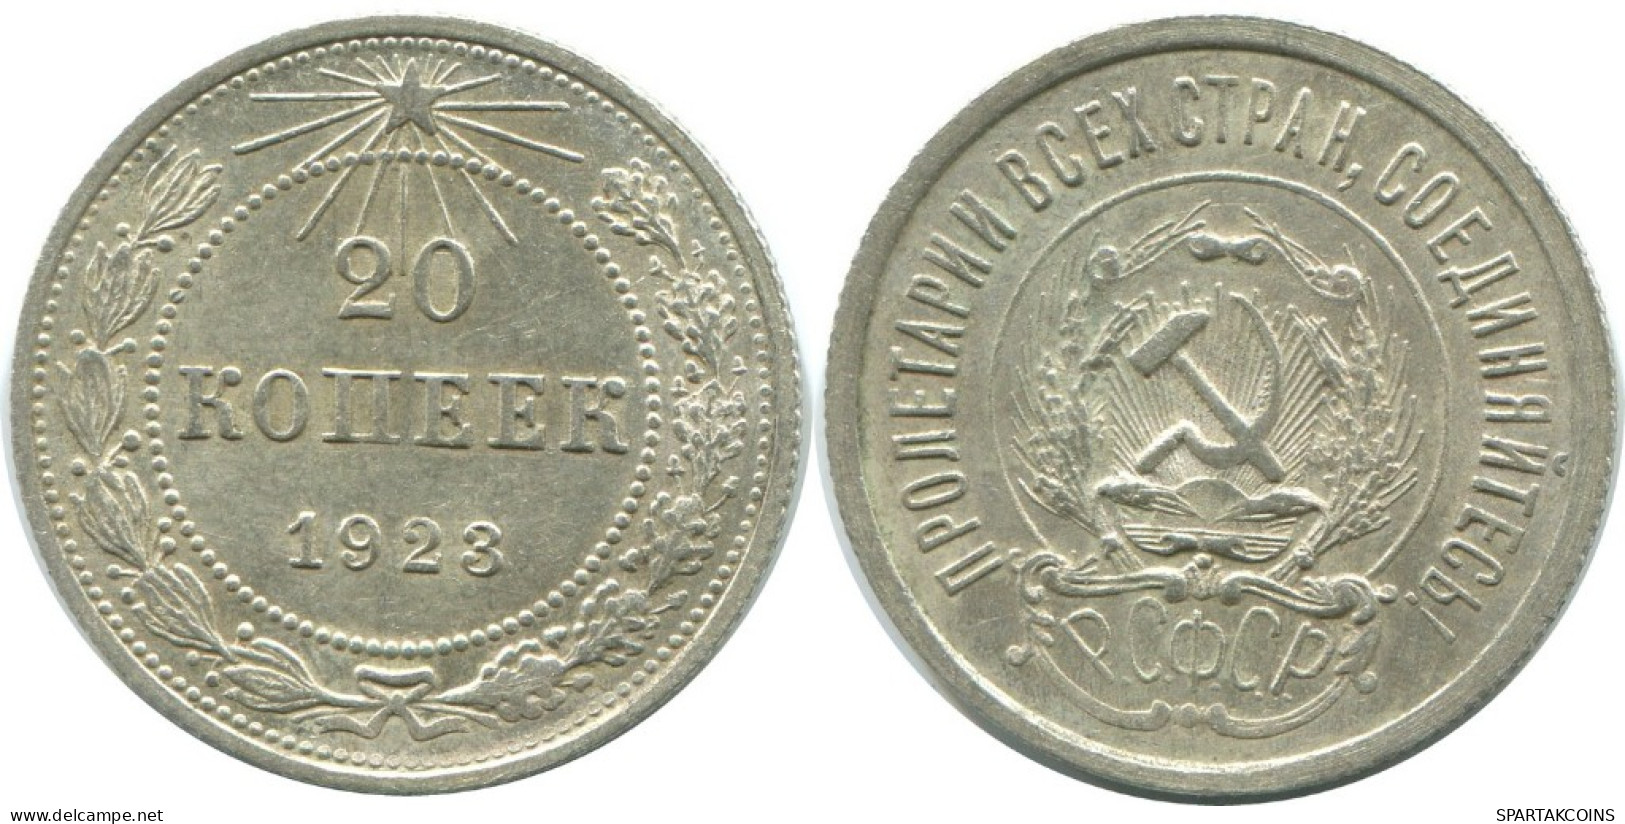 20 KOPEKS 1923 RUSSIA RSFSR SILVER Coin HIGH GRADE #AF612.U.A - Rusland